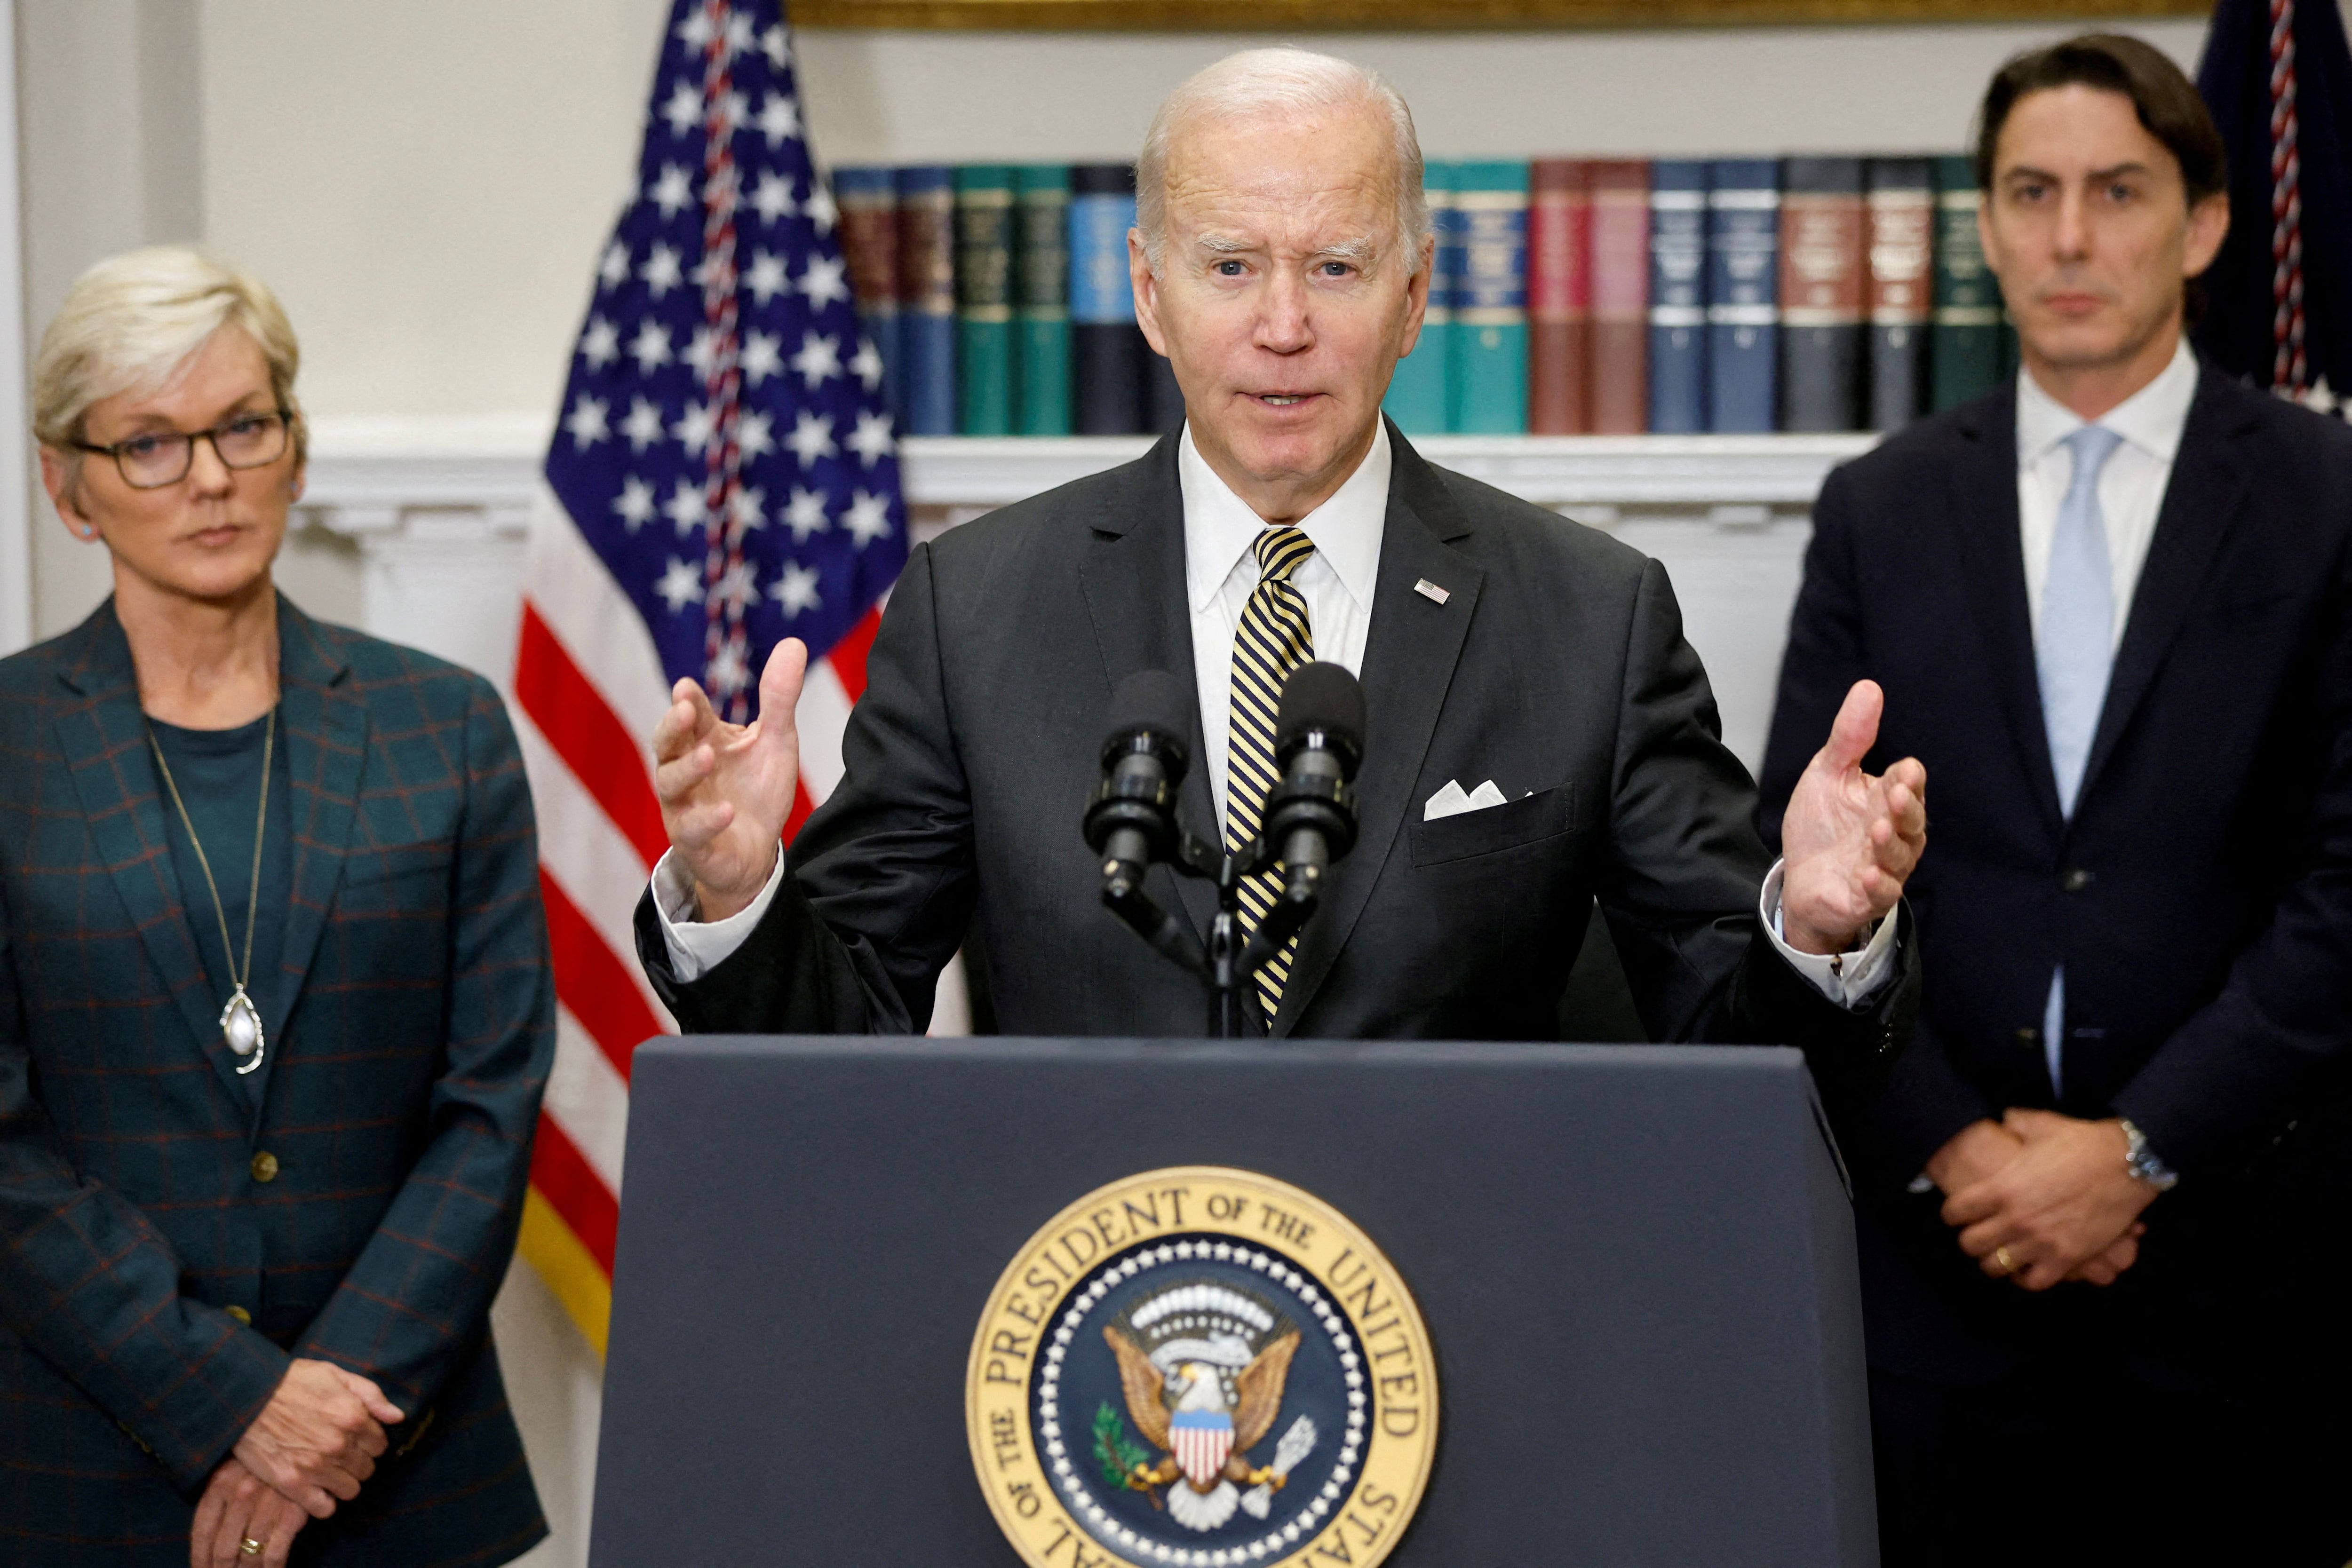 Biden solicitó al Congreso la aprobación de una ley migratoria para cerrar la frontera con México cuando esté “colapsada”. (REUTERS/Jonathan Ernst)